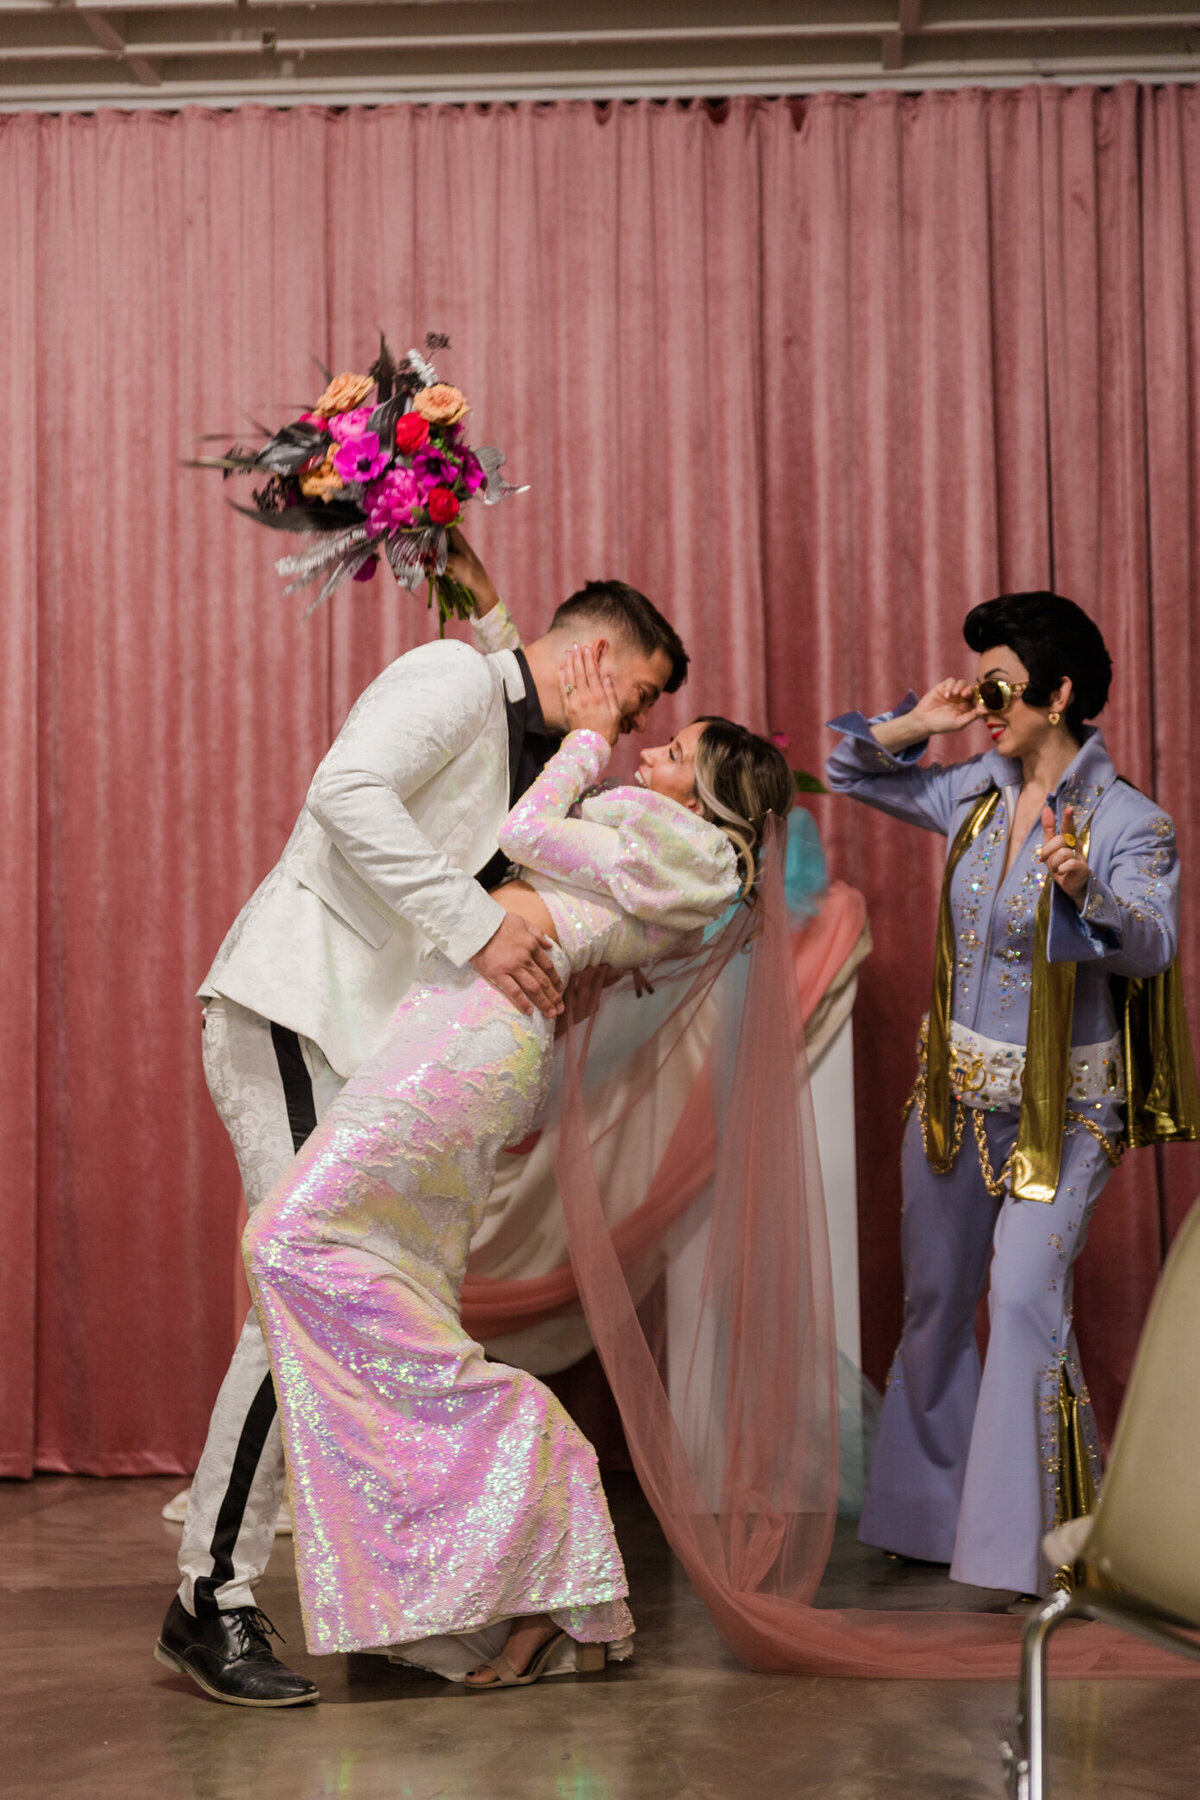 Las Vegas Elopement, Elvis Elopement, Convertible Elopement, Las Vegas Elopement Photographer, Las Vegas Wedding Photographer, Sure Thing Wedding Chapel-14